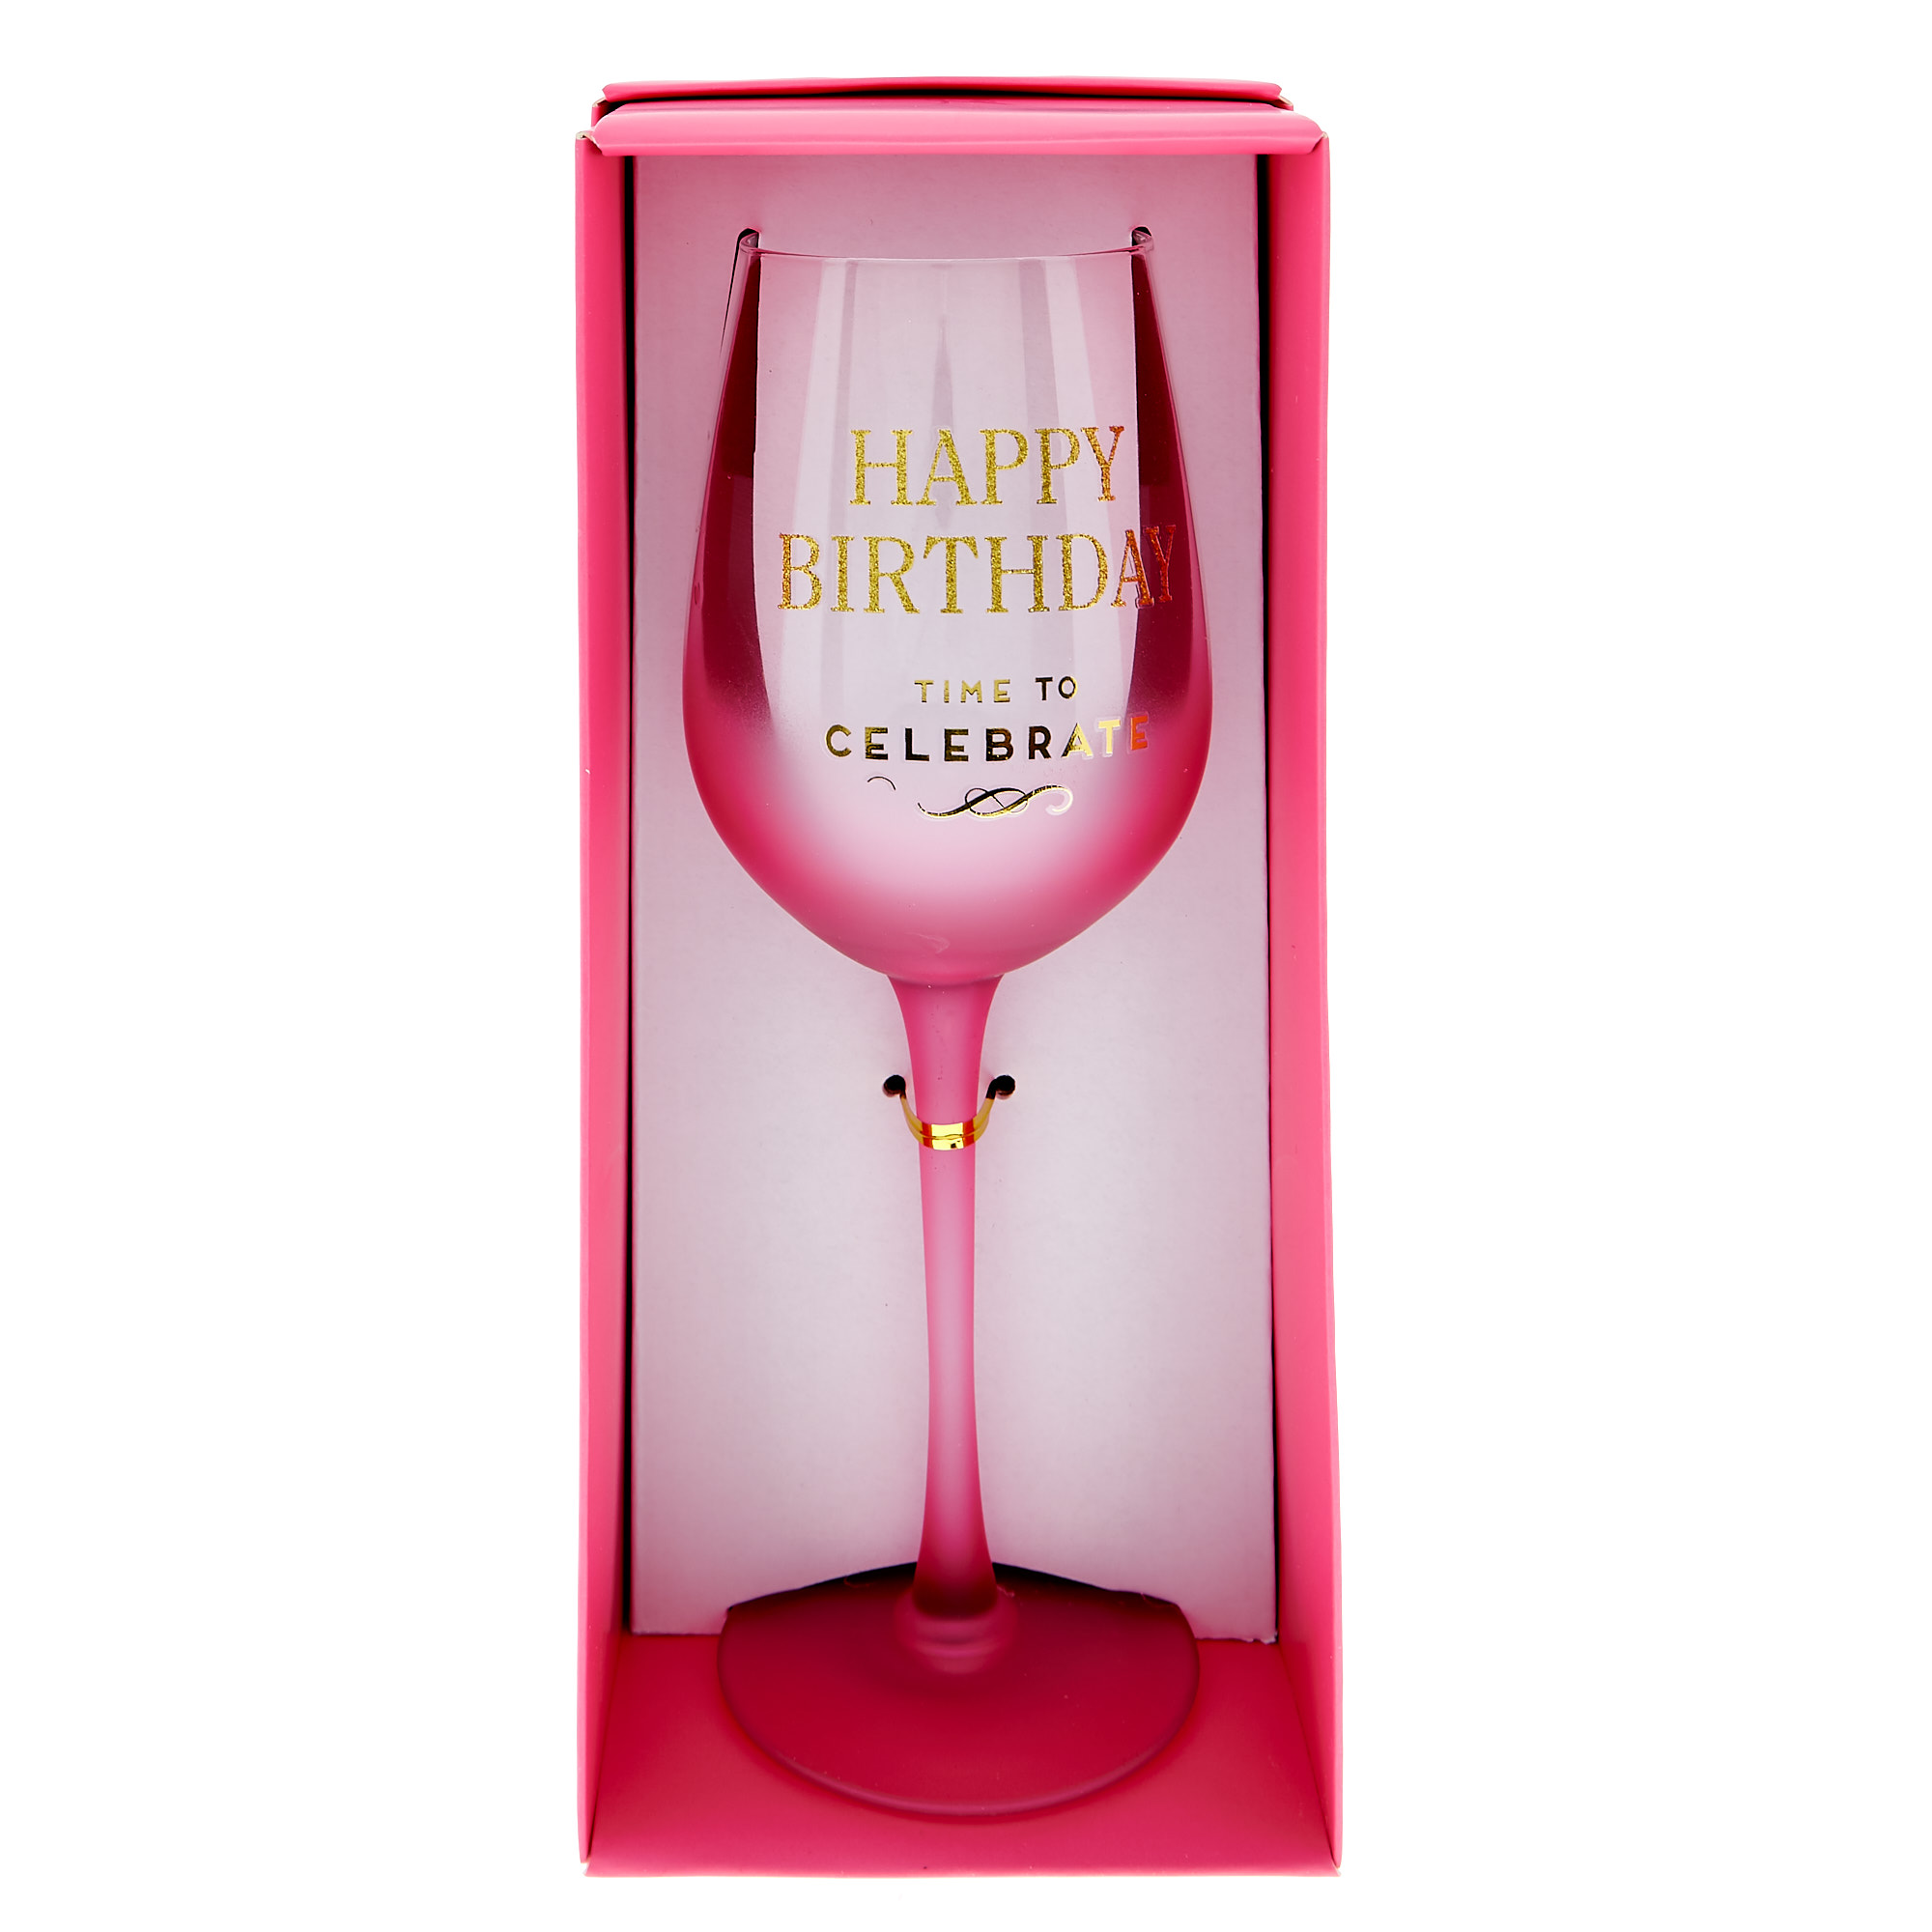 Happy Birthday Wine Glass - Time To Celebrate 